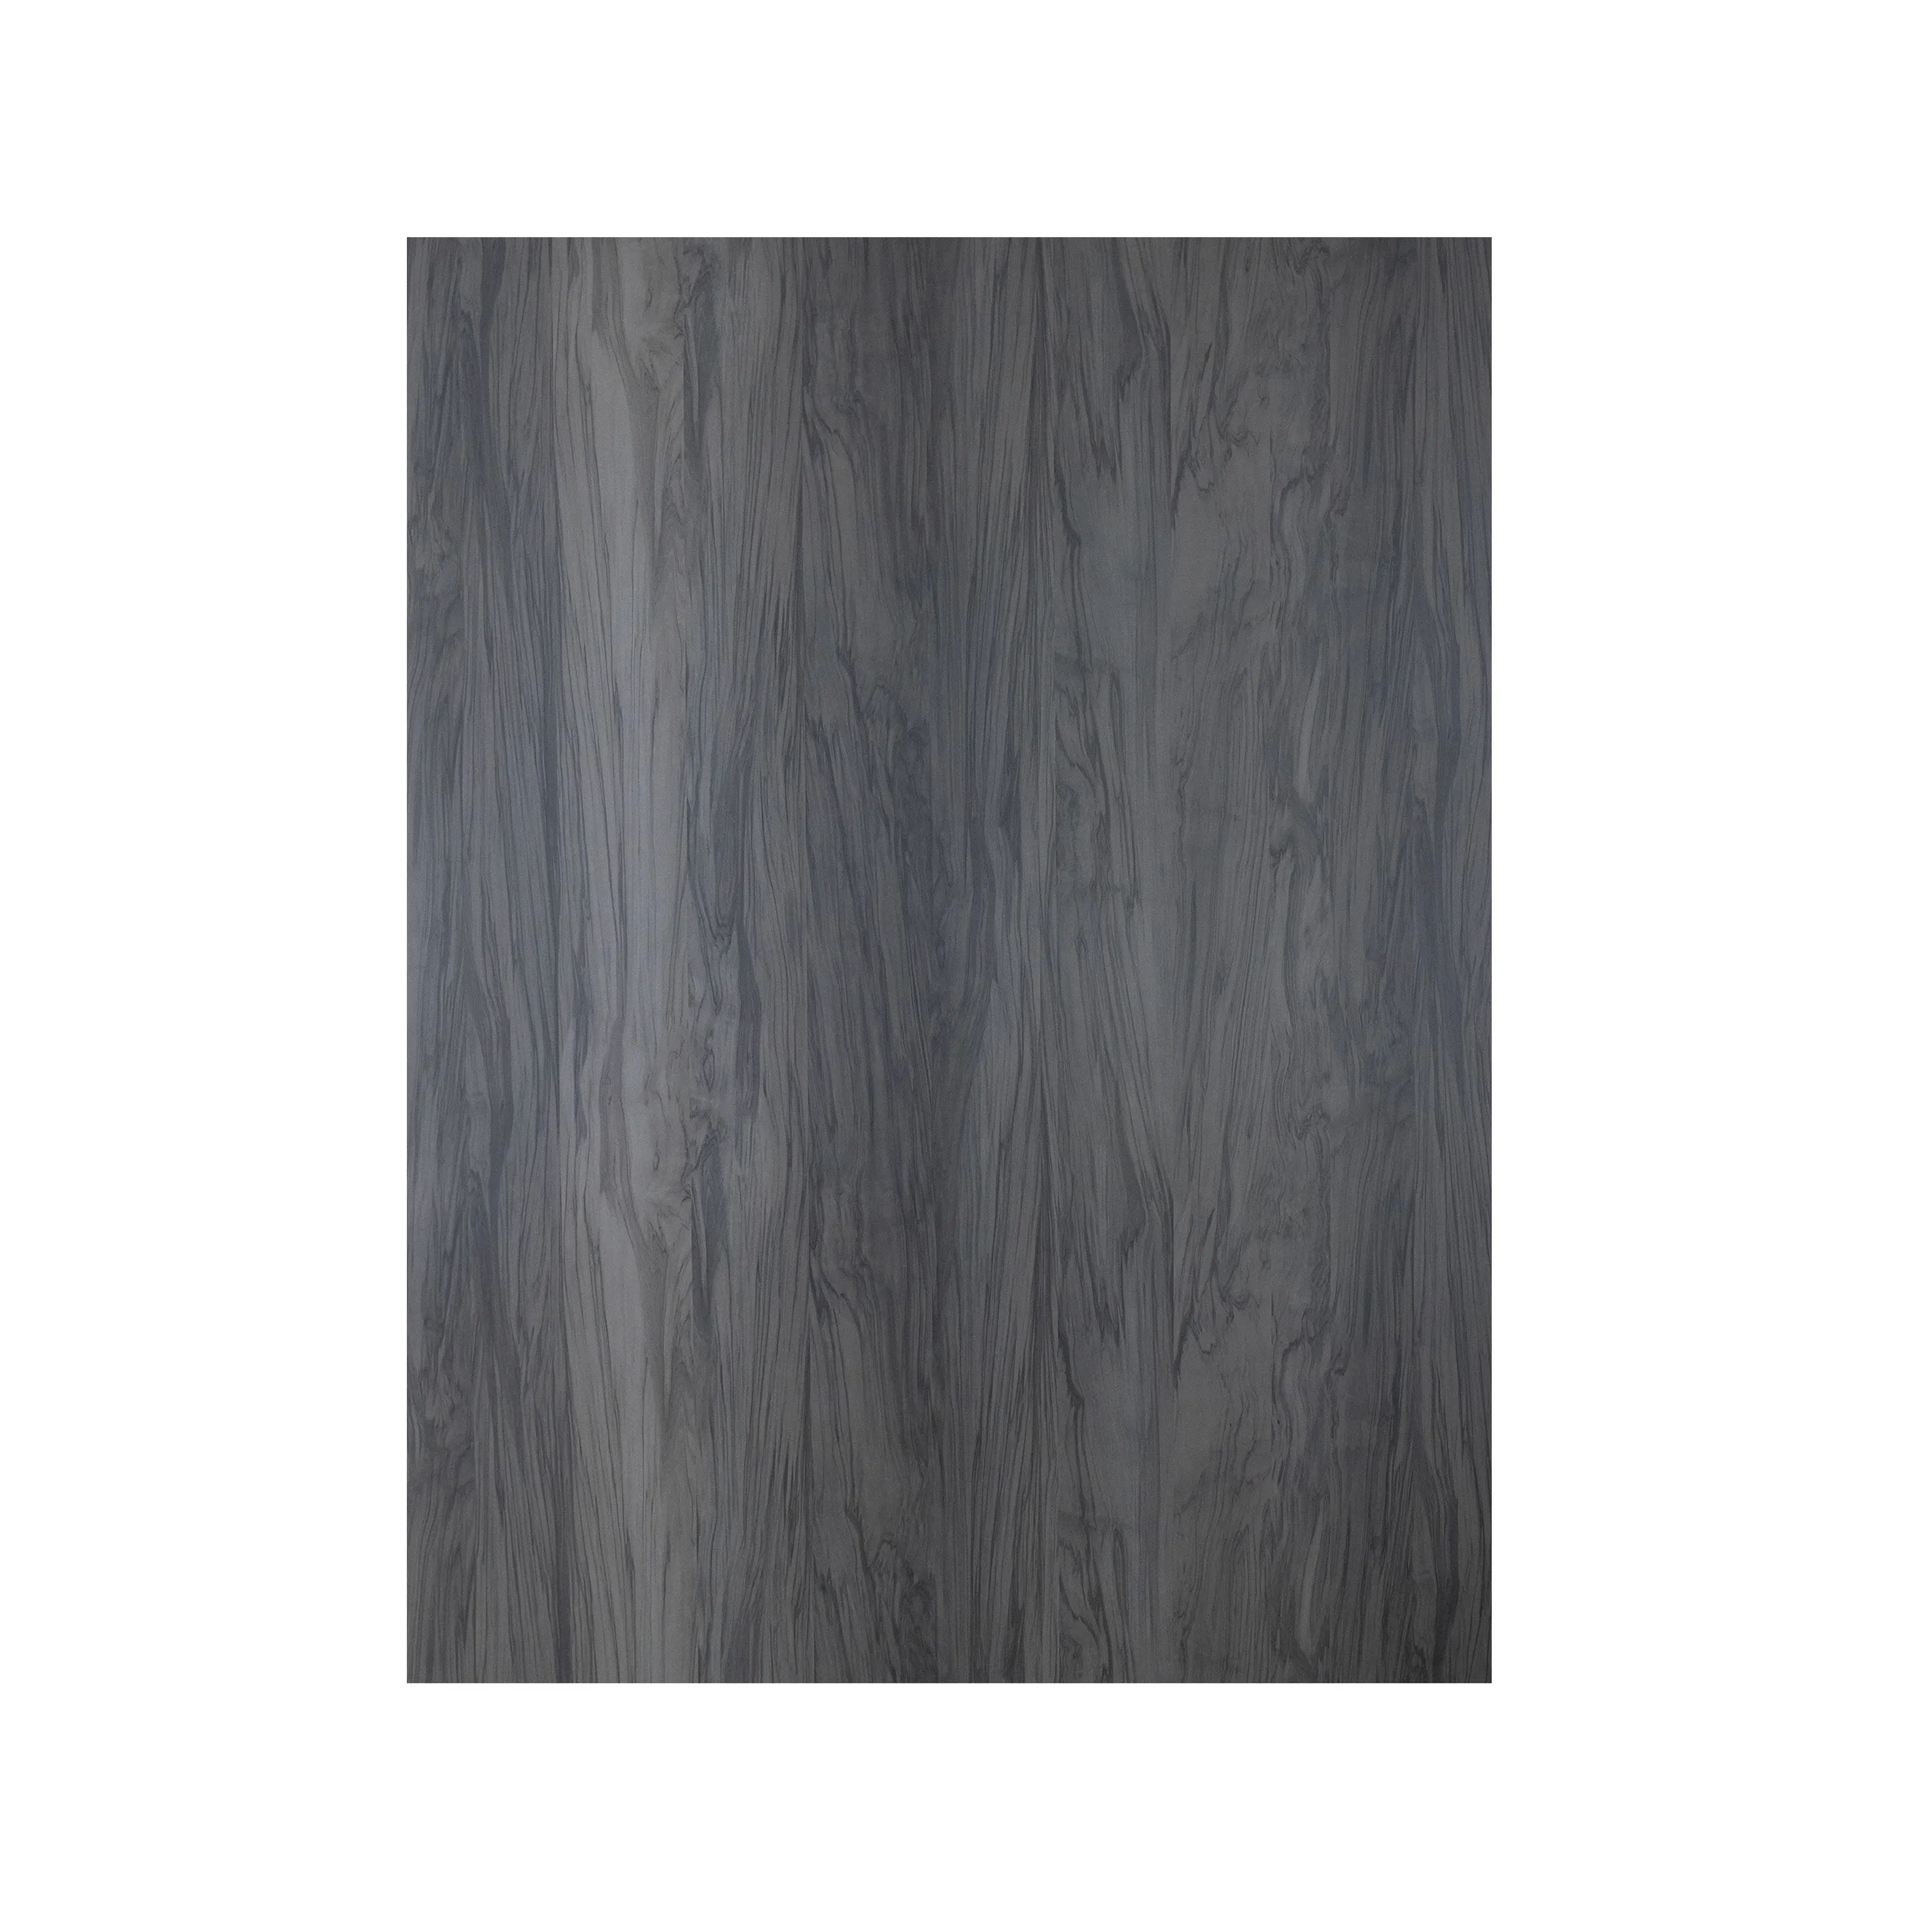 Remica feuilles de stratifié HPL de Grain de pierre de Surface brillante pour décoration de maison armoire de cuisine avec effet de Grain de marbre HPL